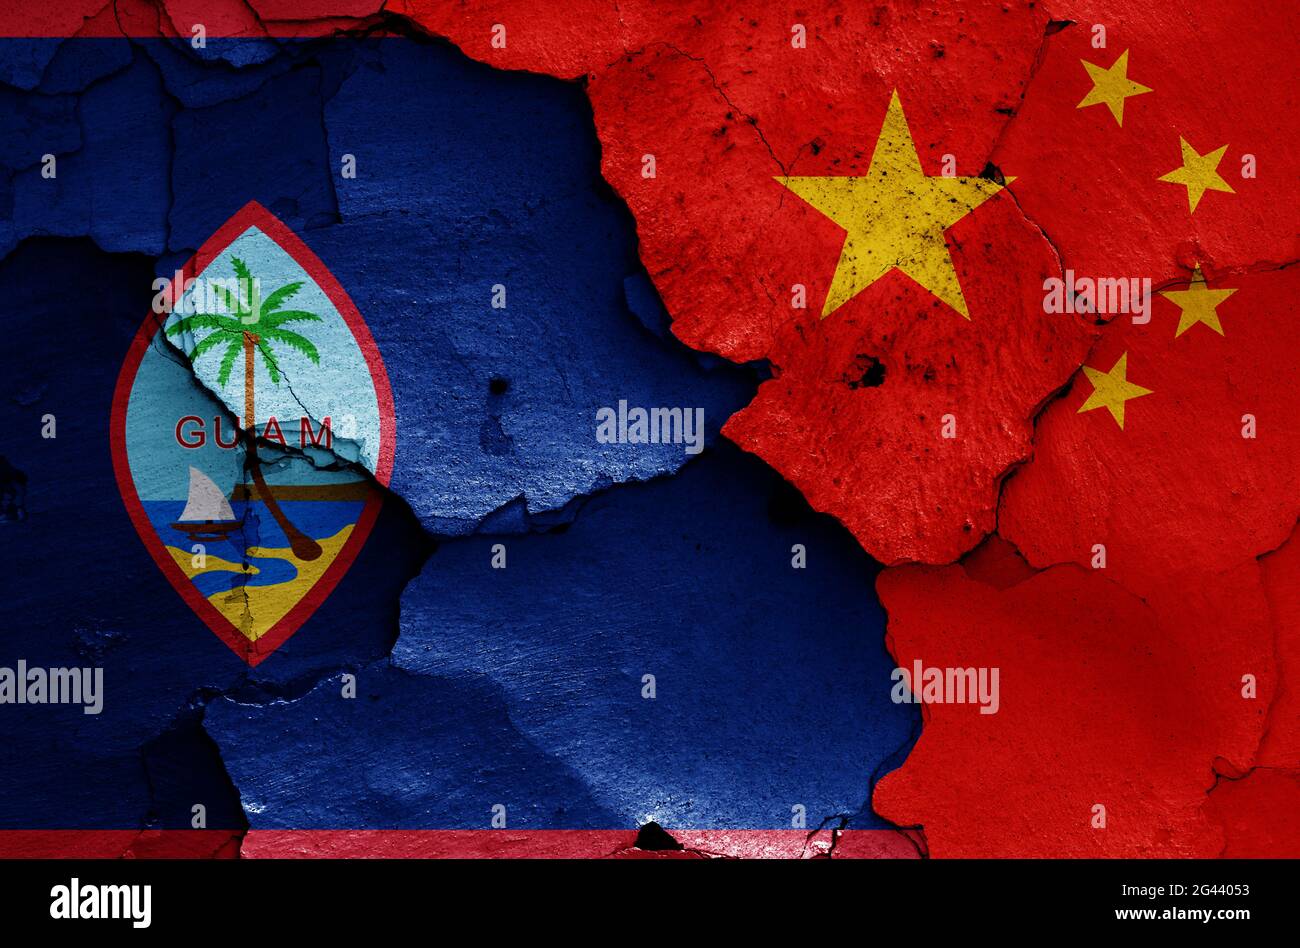 Flaggen von Guam und China auf rissige Wand gemalt Stockfoto